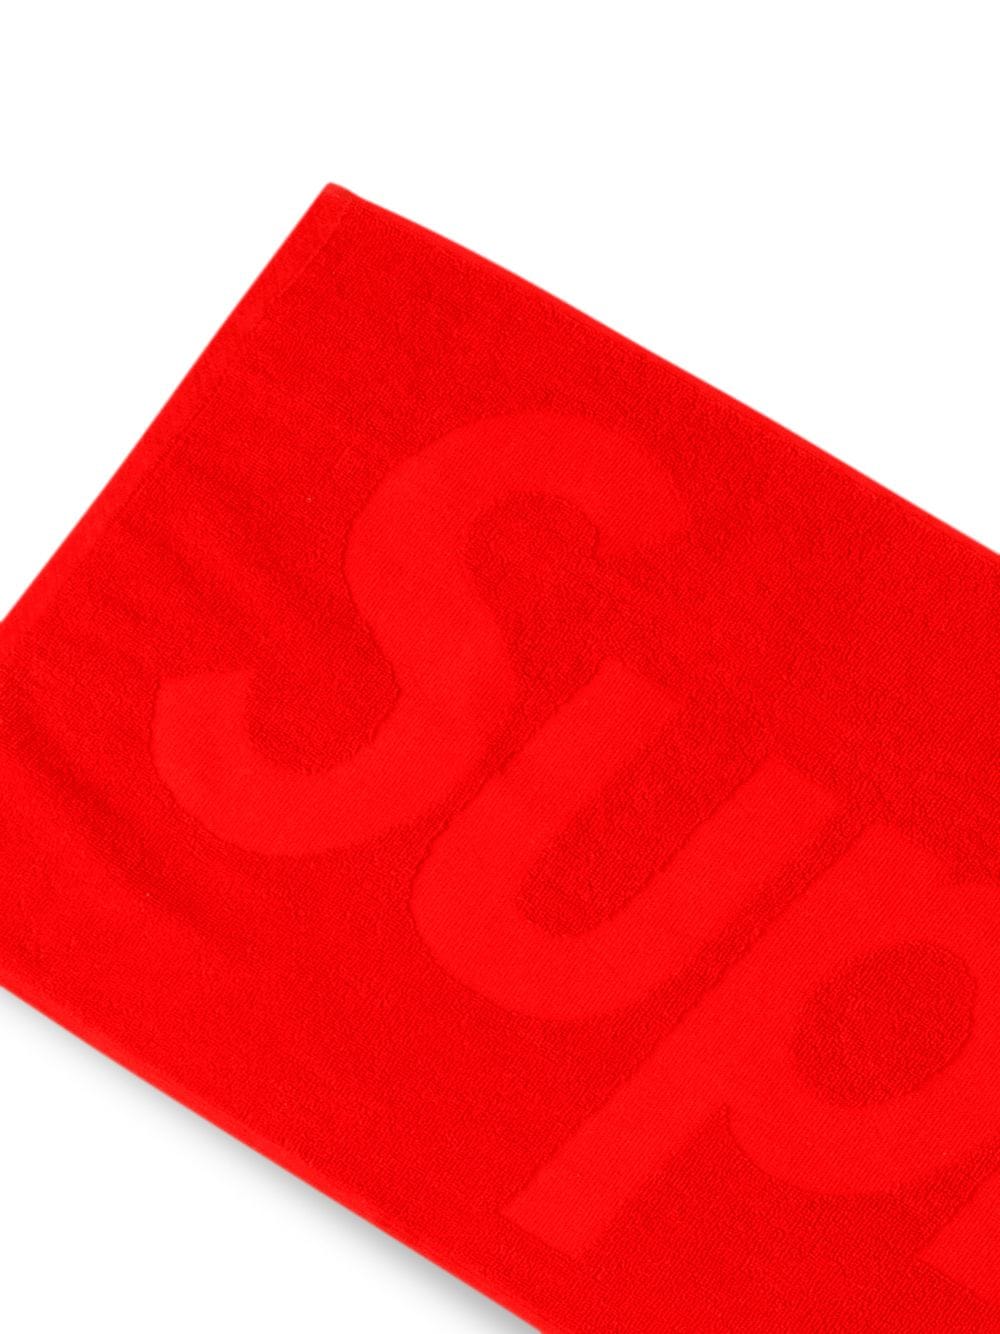 即納セールSupreme Terry Logo Hand Towel 3枚セット タオル/バス用品